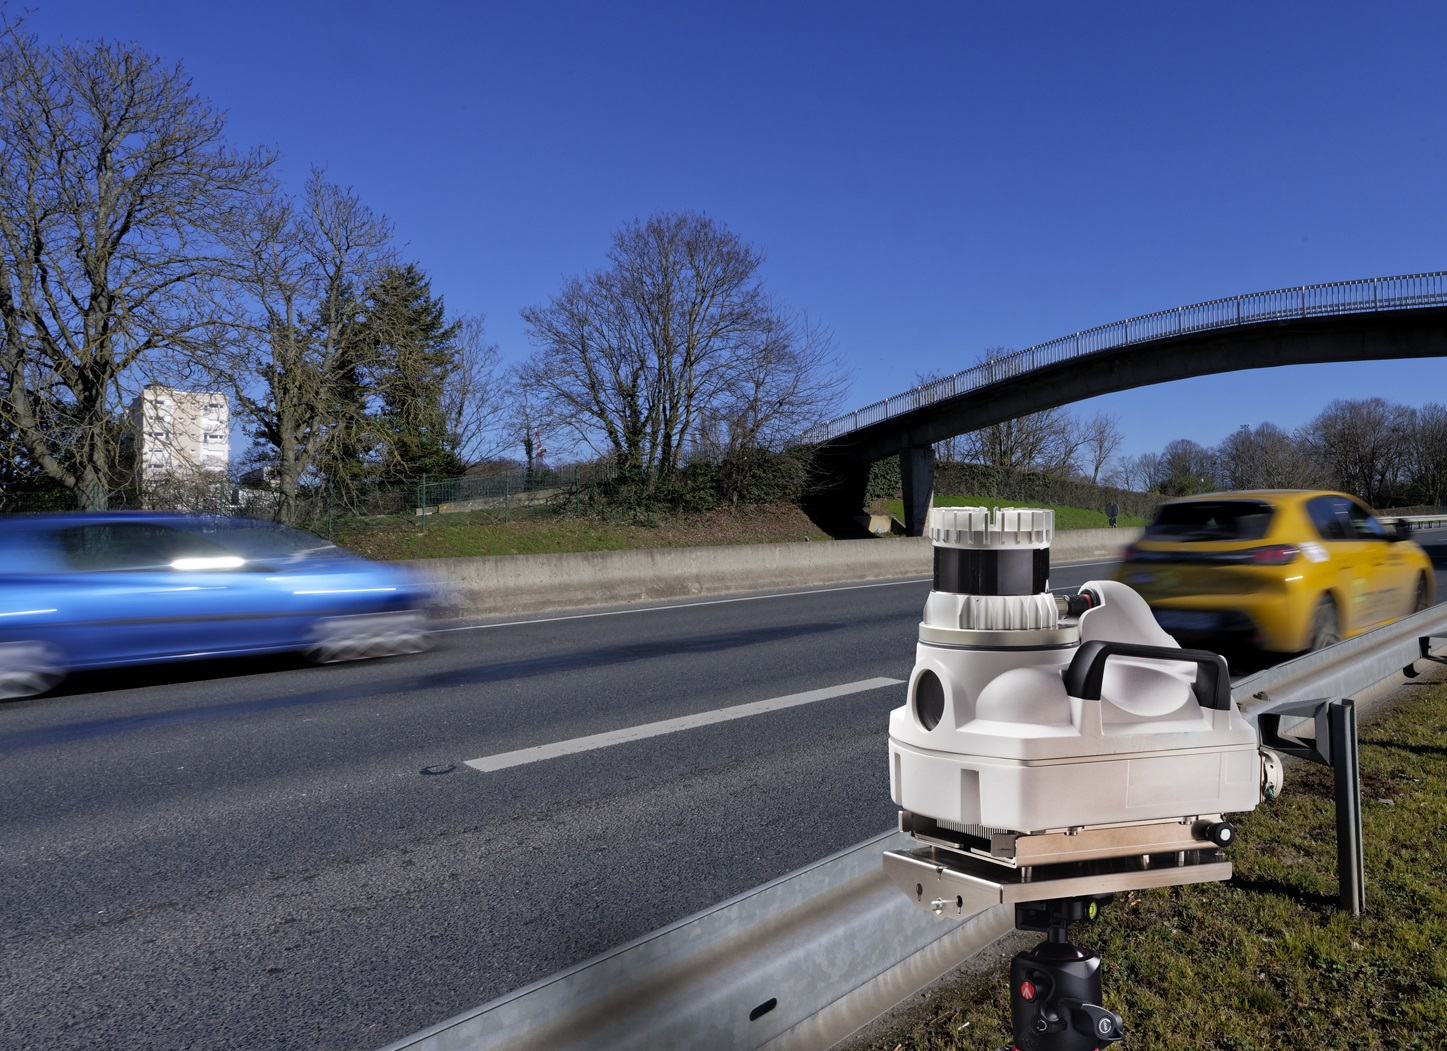 3D Lidar sensor speed camera enforcement road safety real-time data 